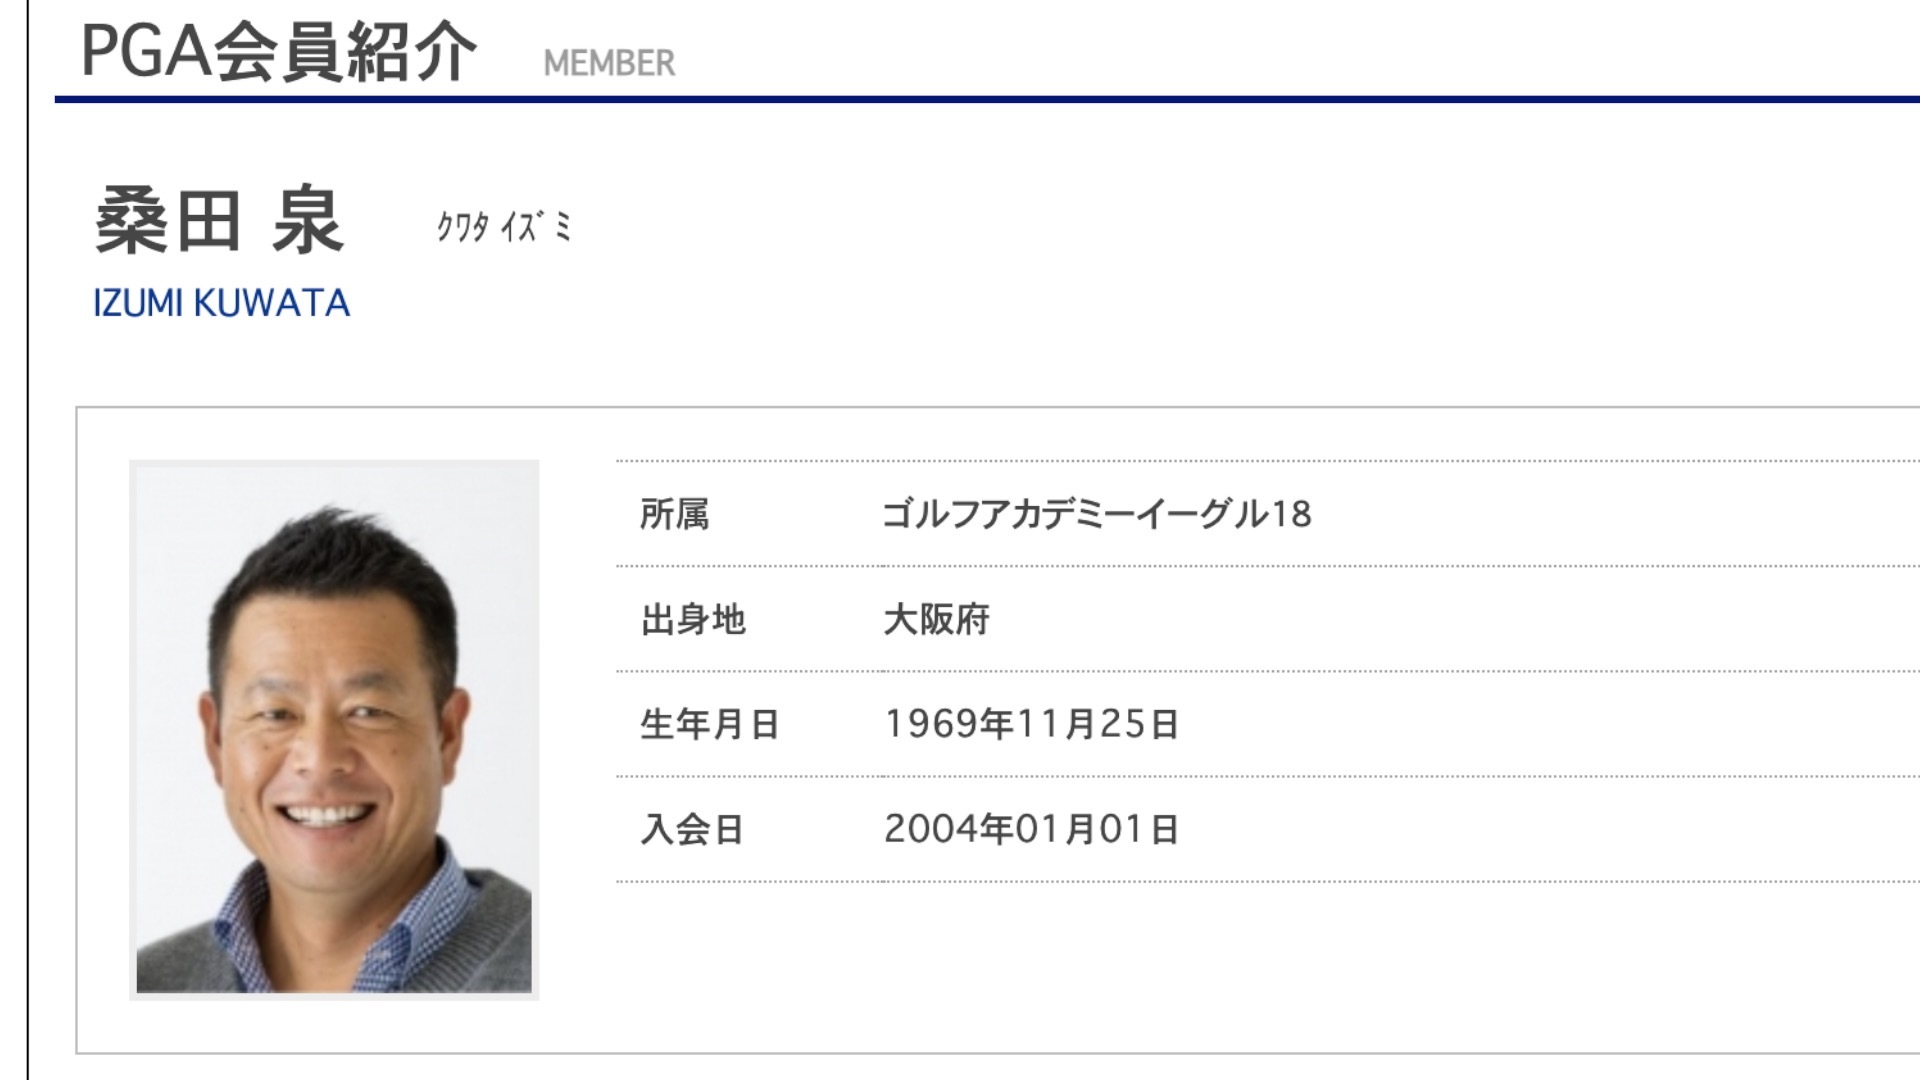 出典：日本プロゴルフ協会 (http://www.smile-pga.jp/profile/?id=006863)